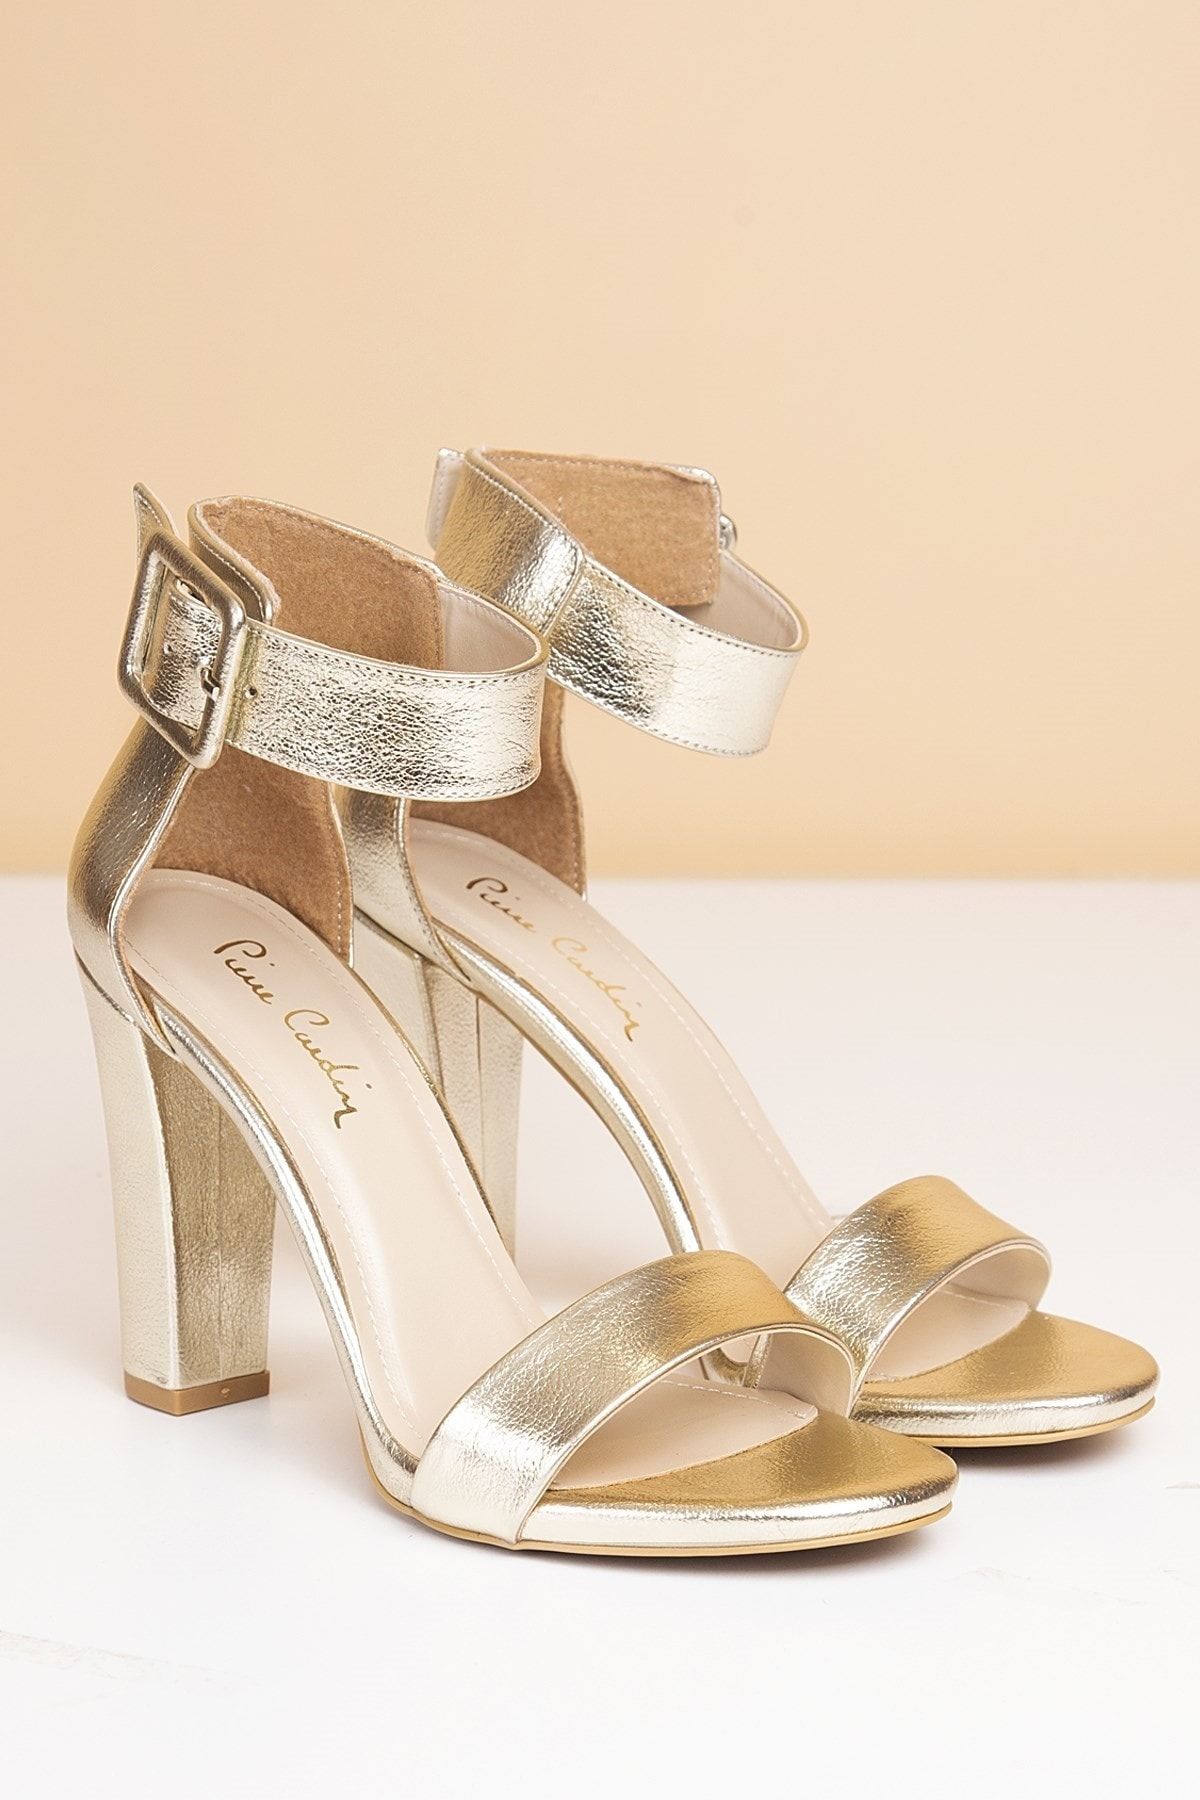 Pierre Cardin Pc-50171 Parlak Altın Kadın Ayakkabı